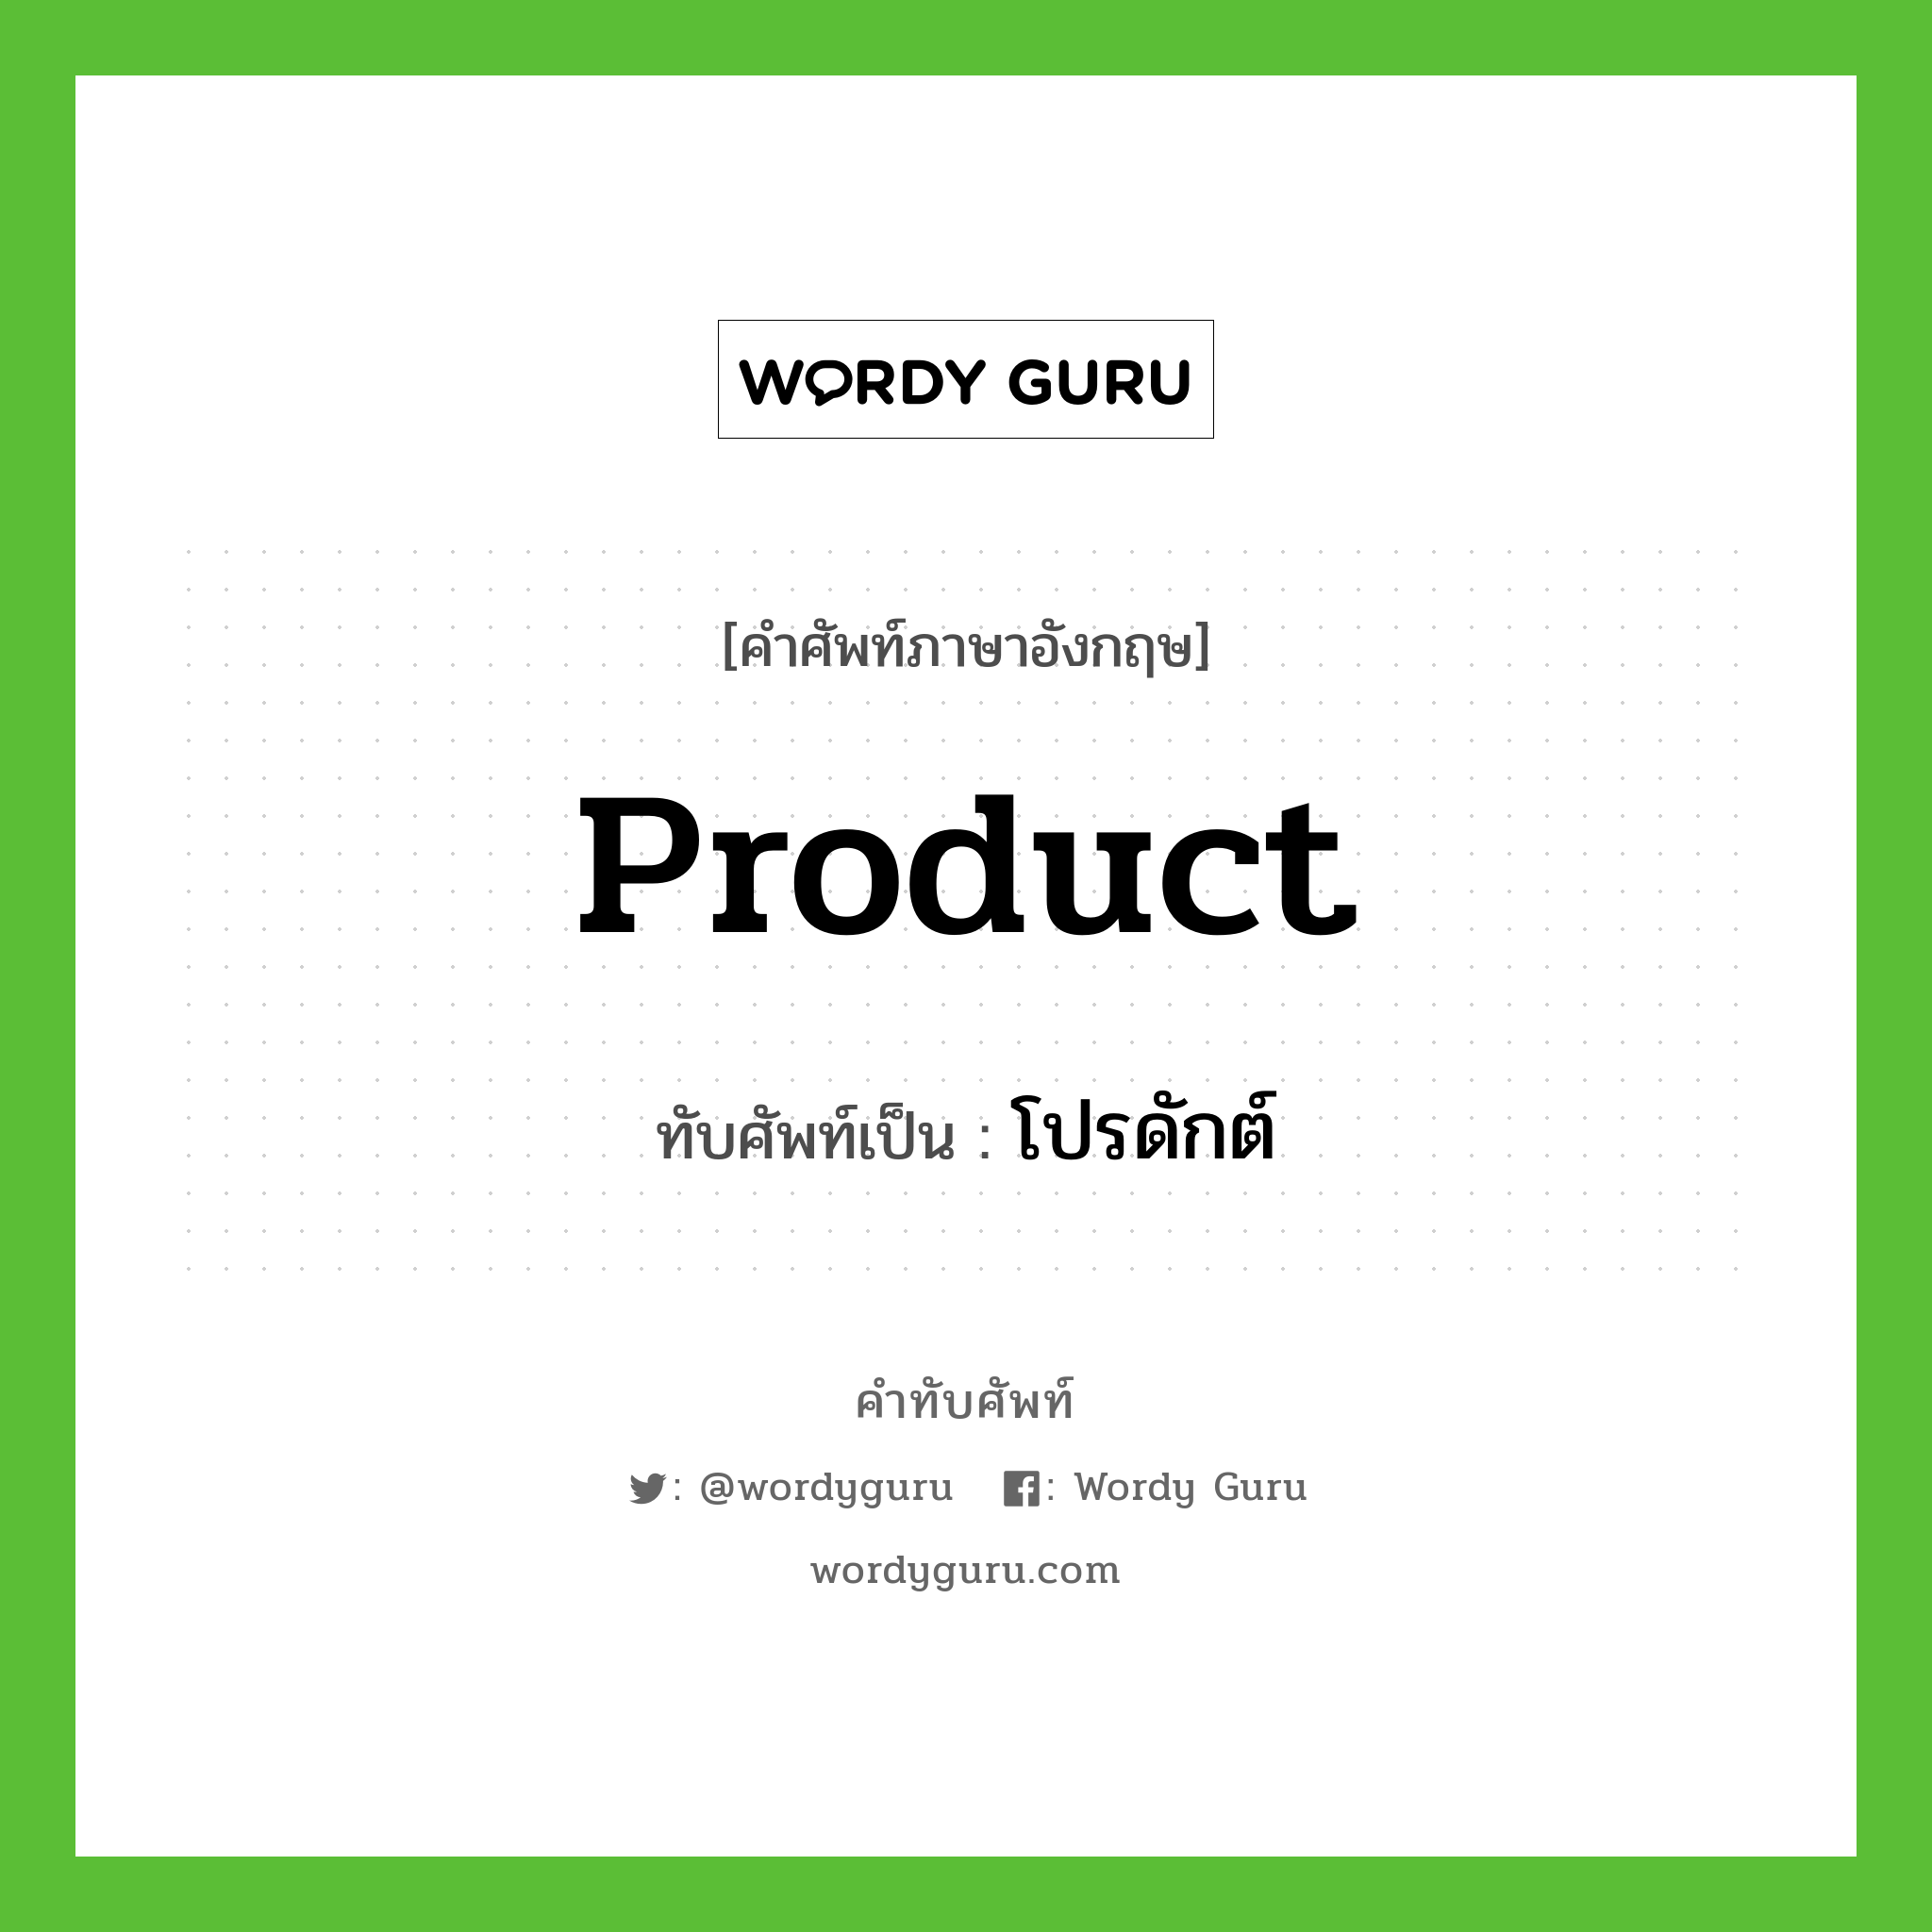 Product เขียนเป็นคำไทยว่าอะไร?, คำศัพท์ภาษาอังกฤษ Product ทับศัพท์เป็น โปรดักต์